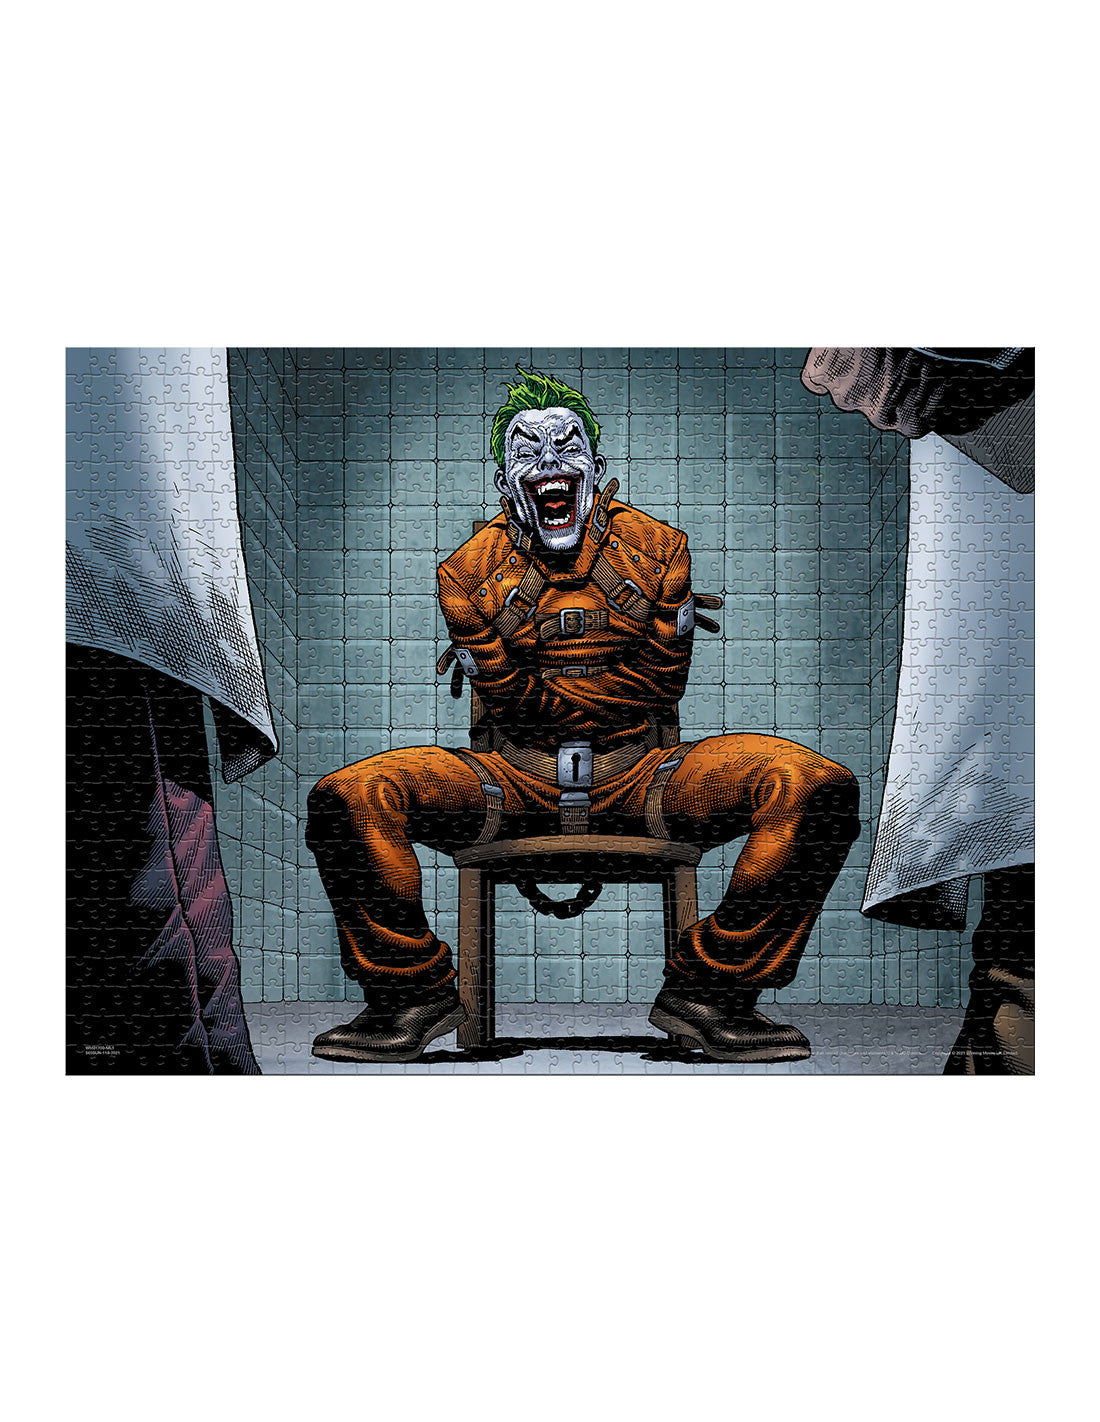 Puzzle Joker DC Comics - 1000 pièces